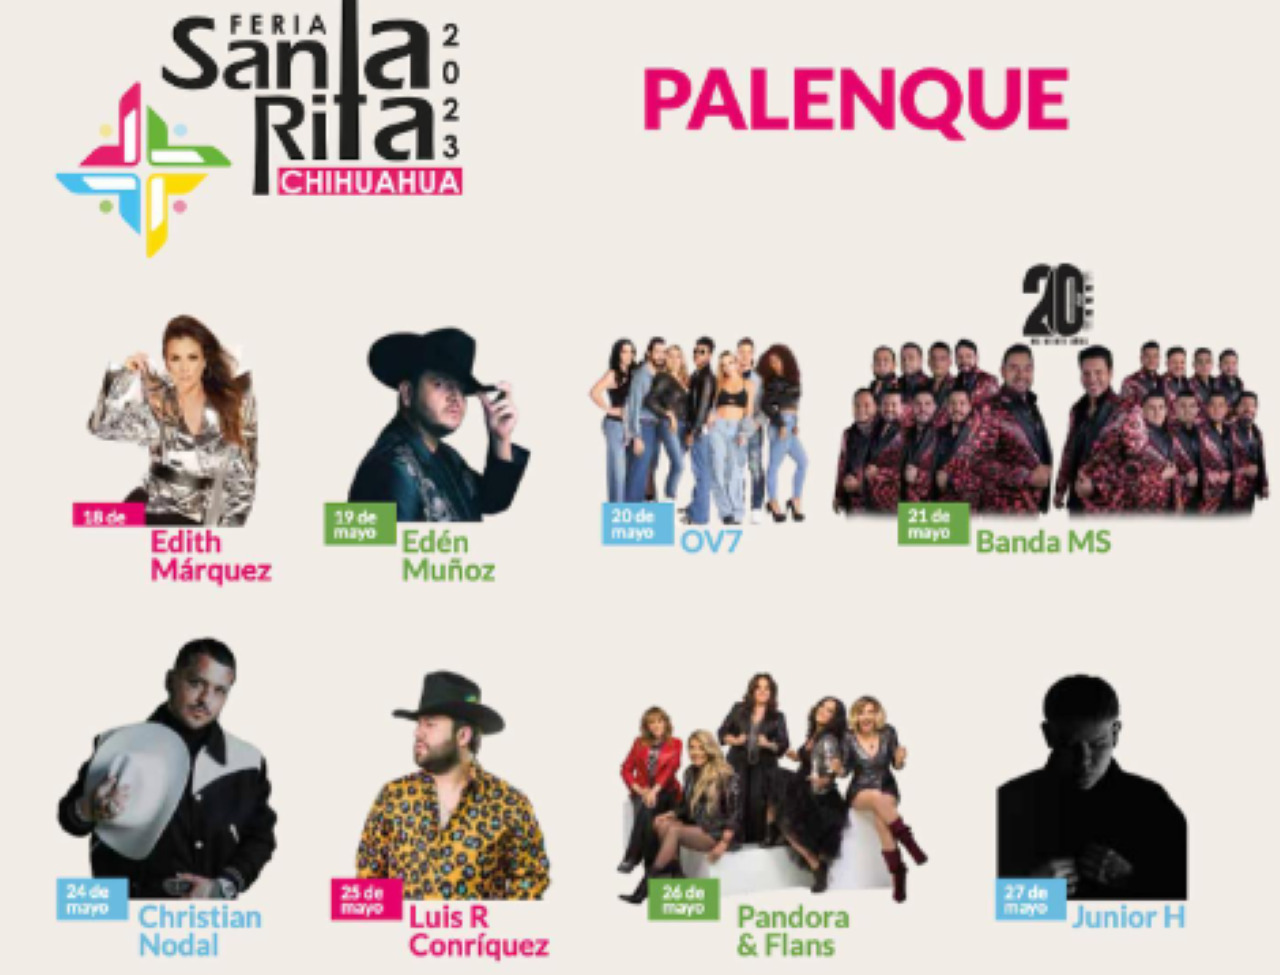 Feria de Santa Rita 2023: precio de boletos del Palenque en Don Boletón